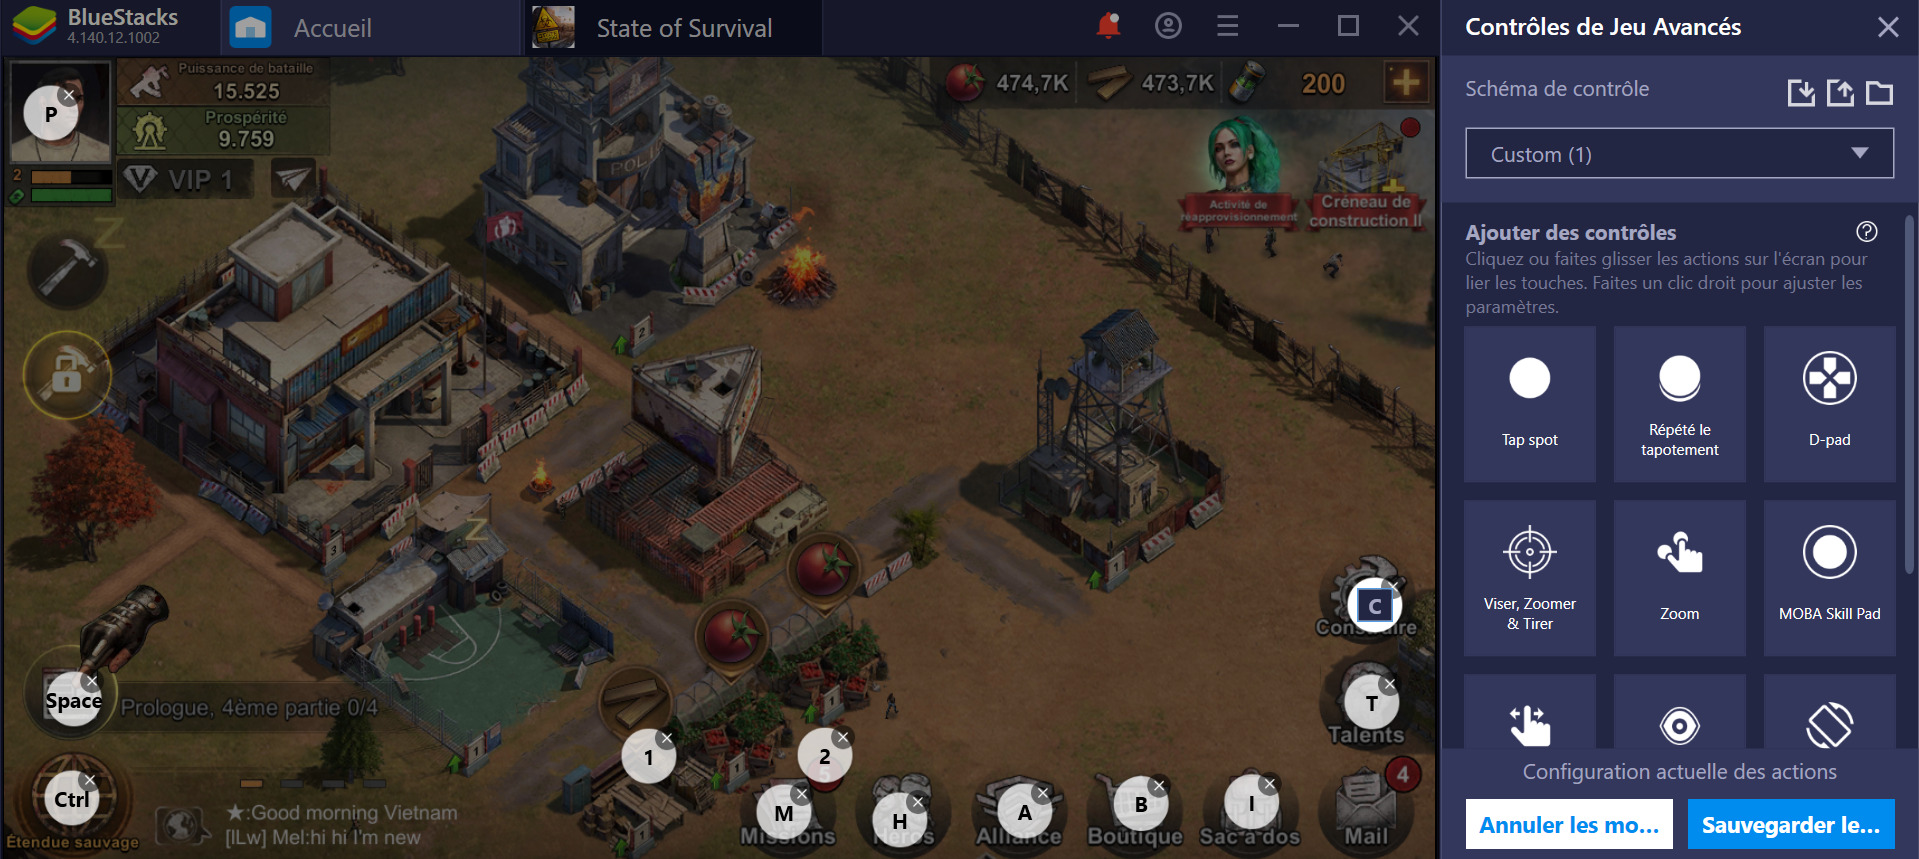 State of Survival sur PC : Utiliser BlueStacks pour gagner dans ce jeu de zombies